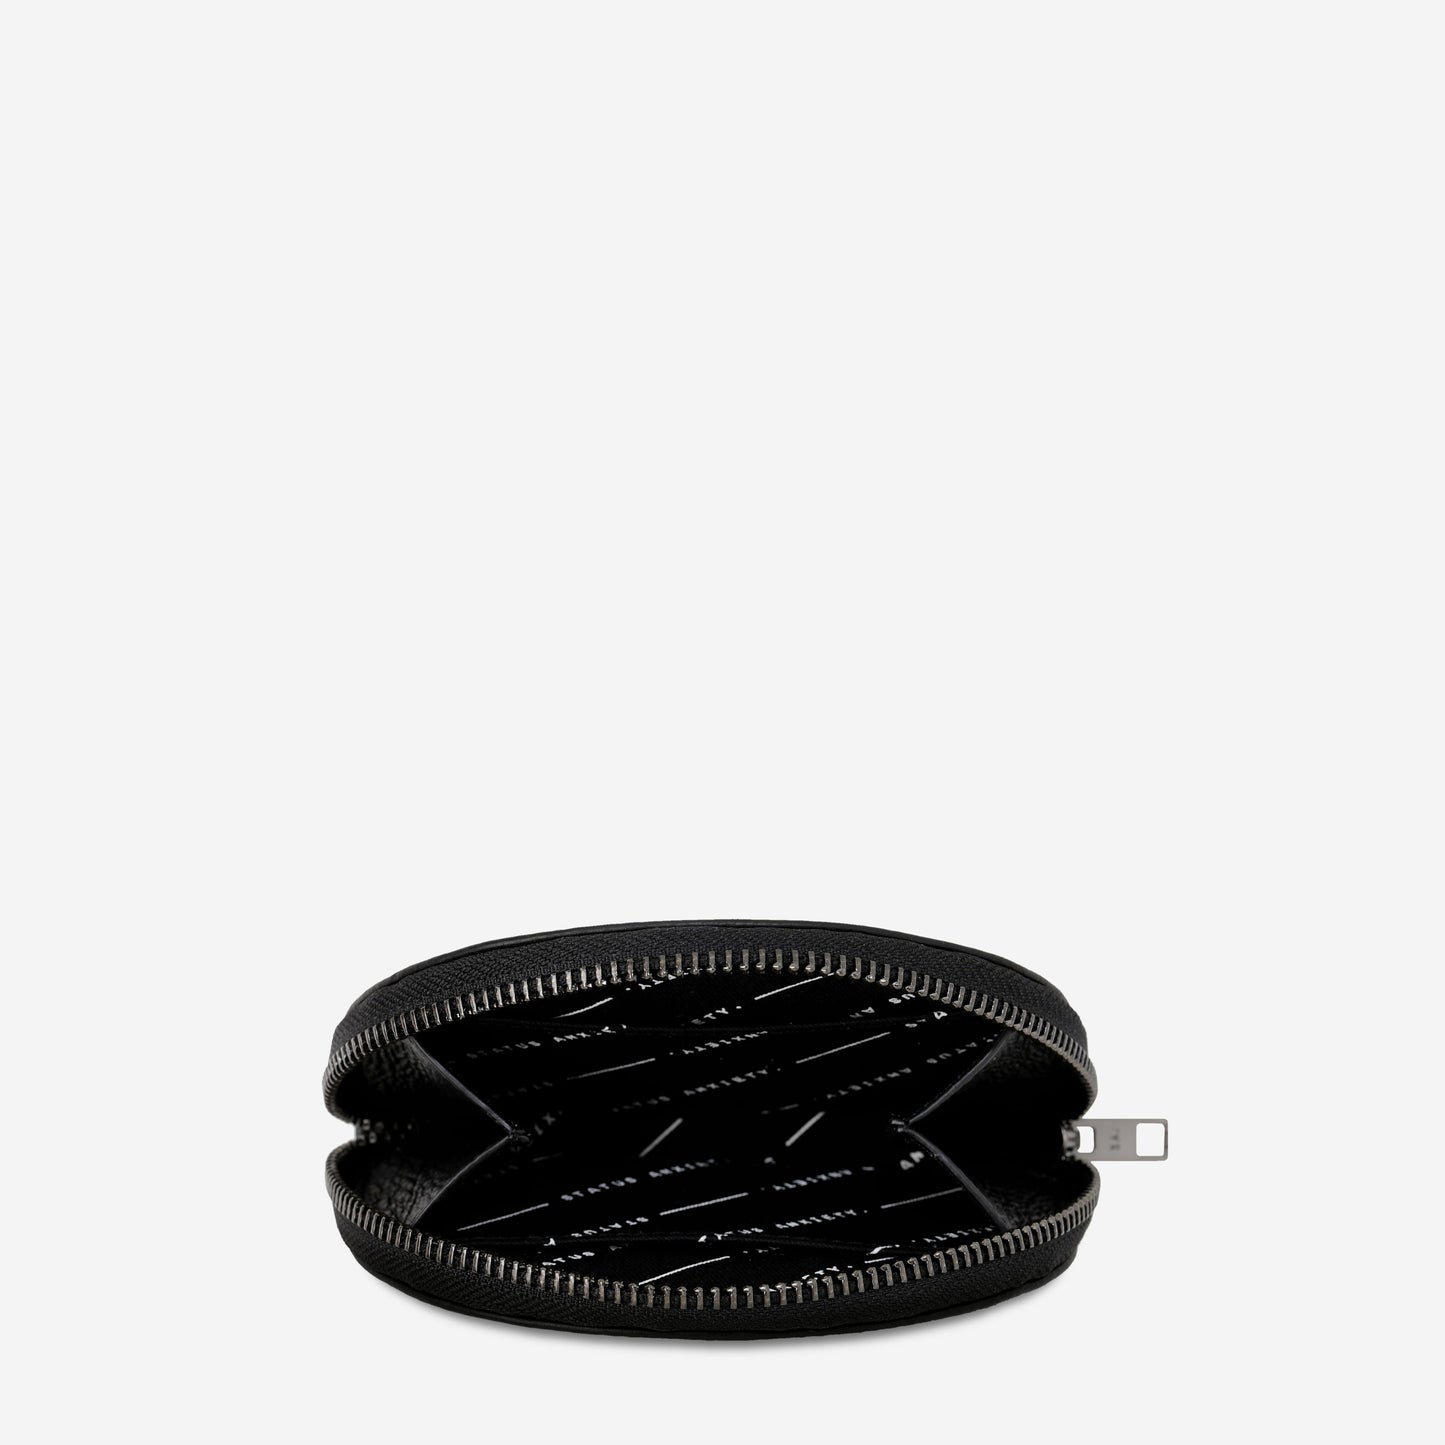 Lucid Leather Wallet - Black